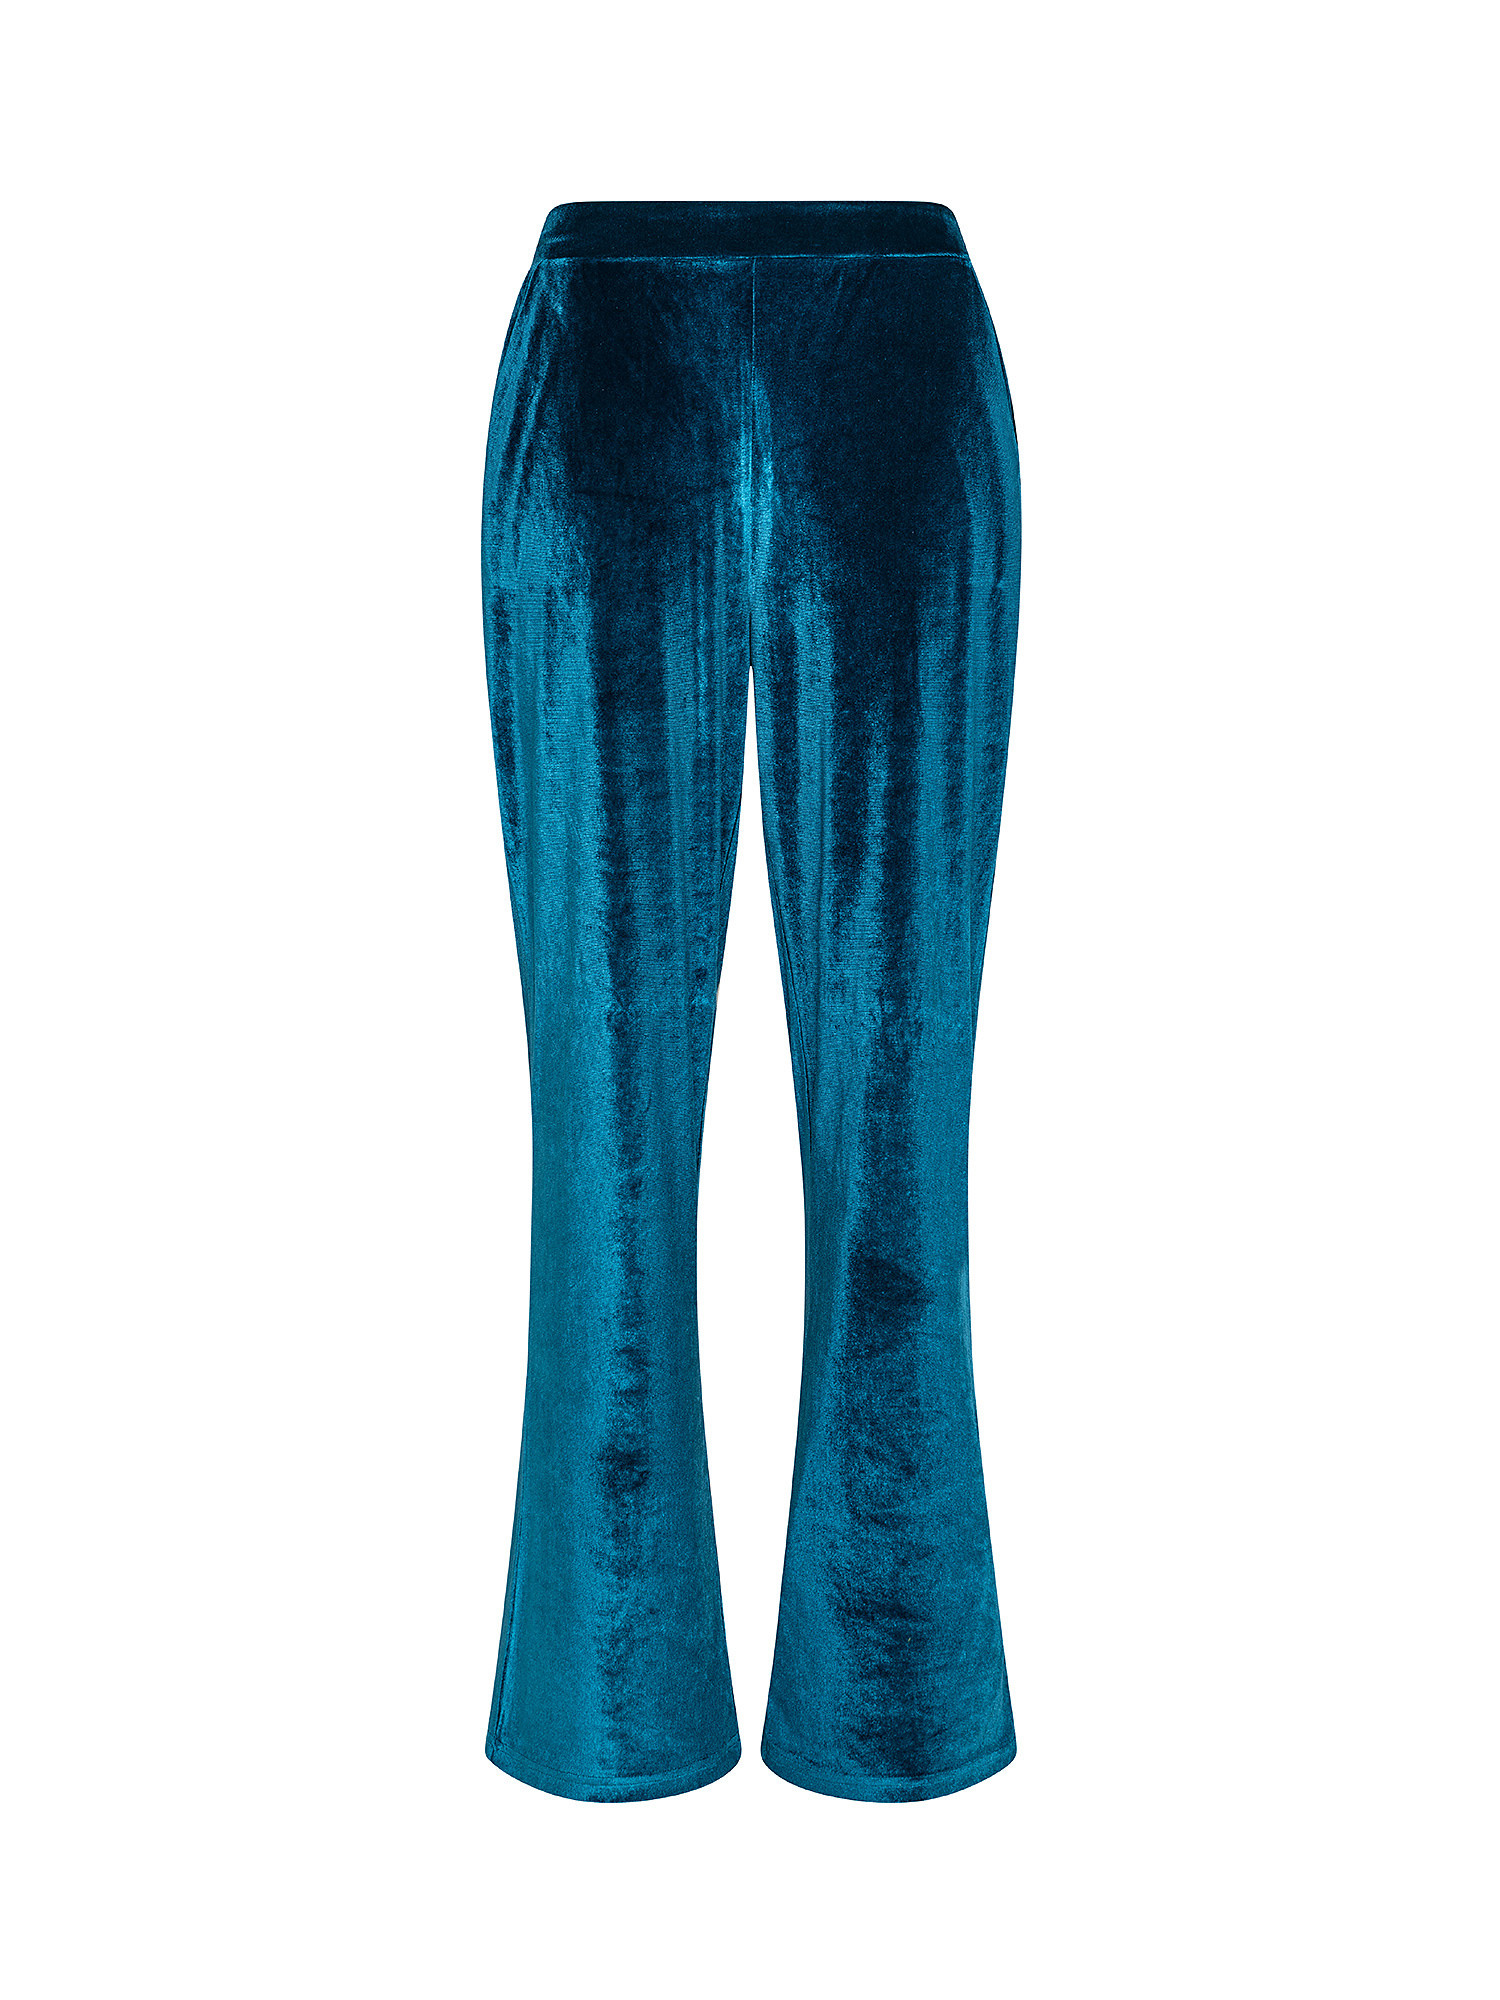 Велюровые брюки Koan Knitwear, зелено-голубой брюки велюровые на меху клариса